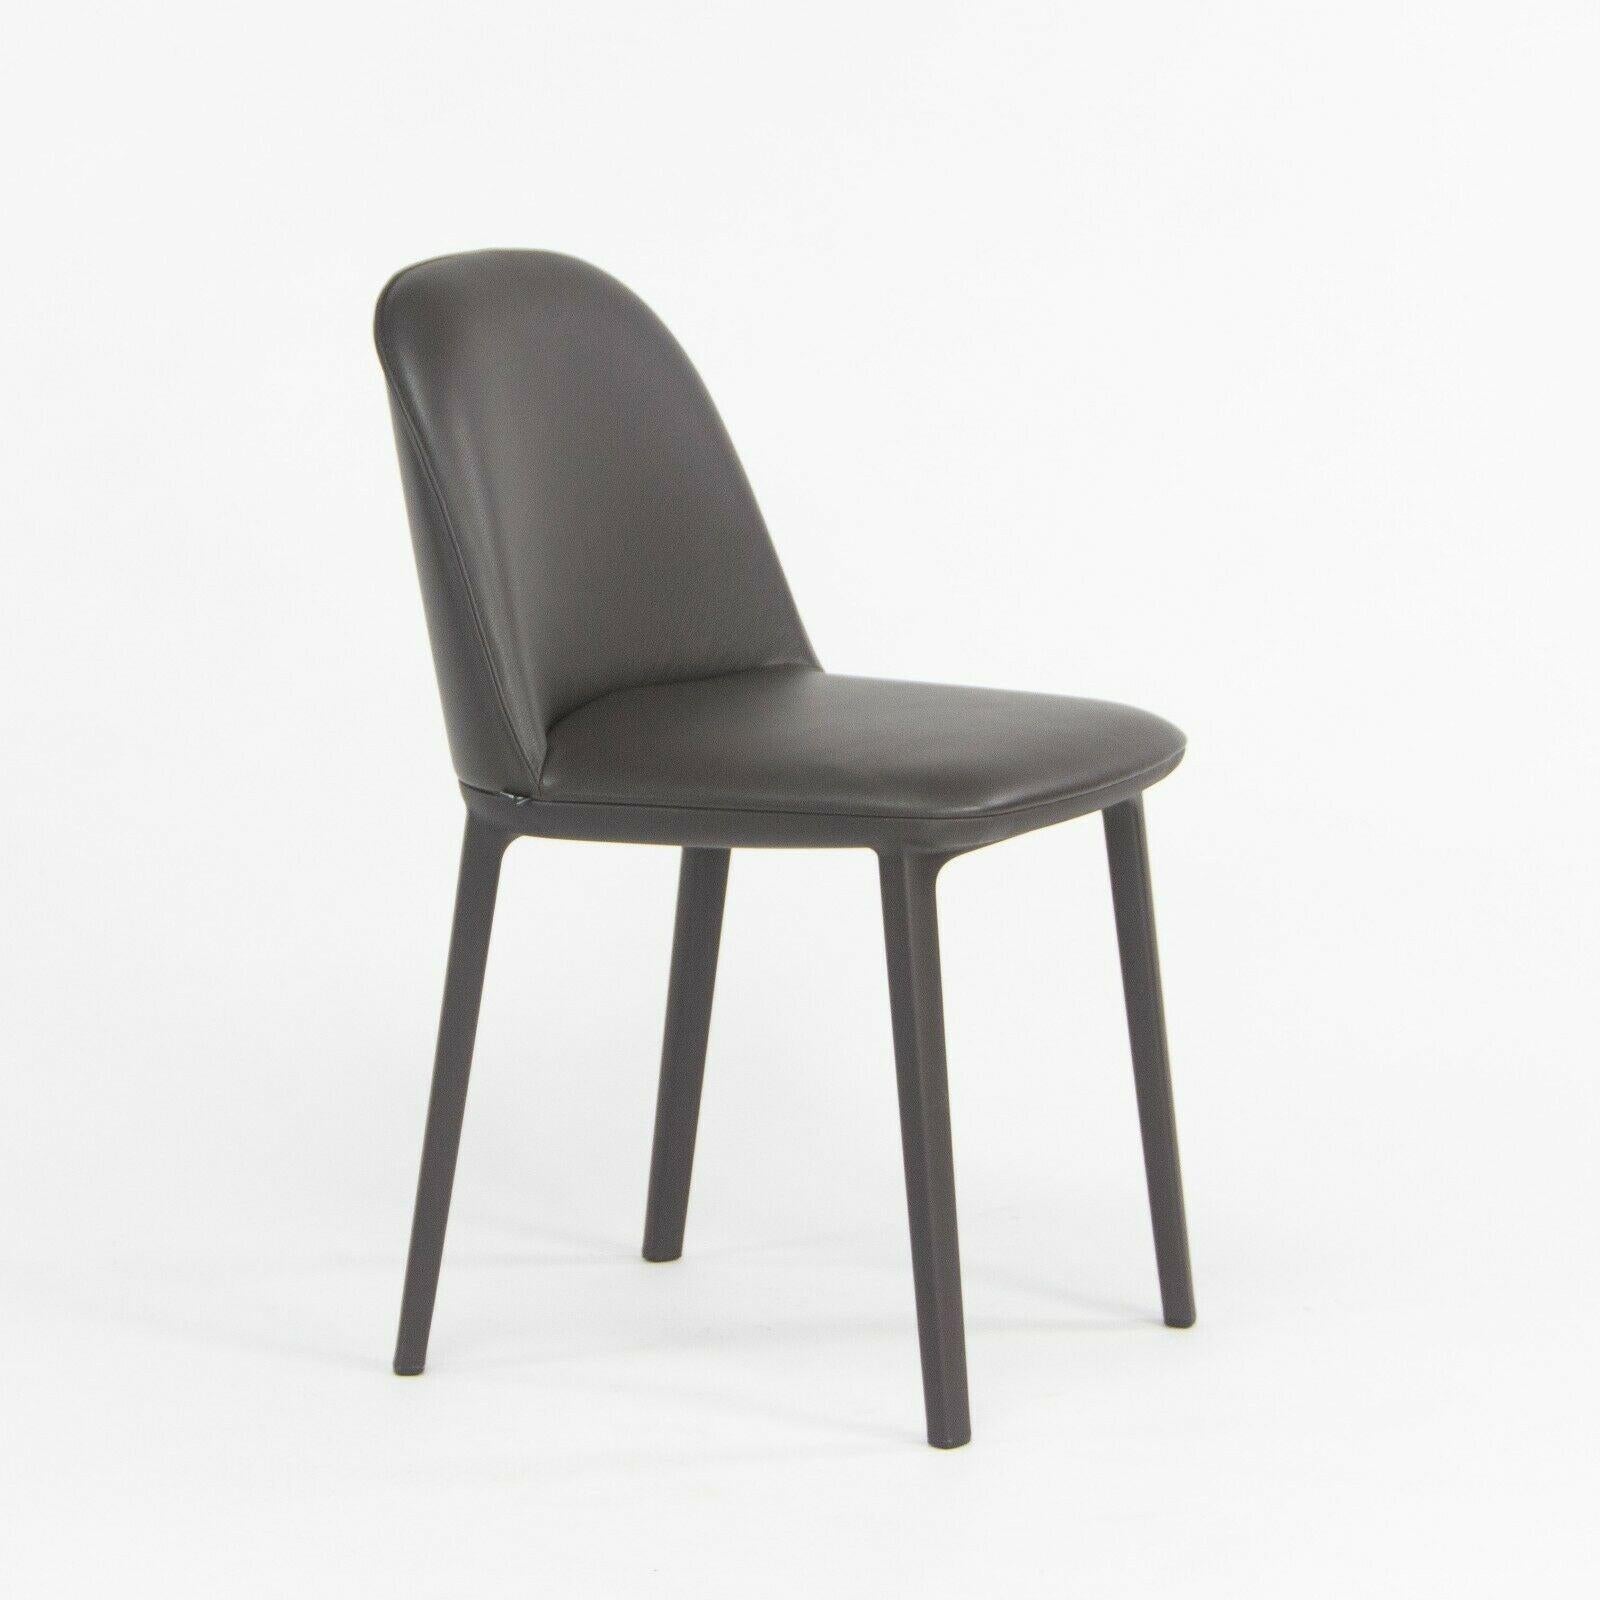 Zum Verkauf steht der Softshell Side Chair, entworfen von Ronan und Erwan Bouroullec und hergestellt von Vitra. Dieser Stuhl wurde mit einem schokoladenfarbenen (sehr dunklen) Kunststoffgestell und einer mit dunkelbraunem Vollleder gepolsterten